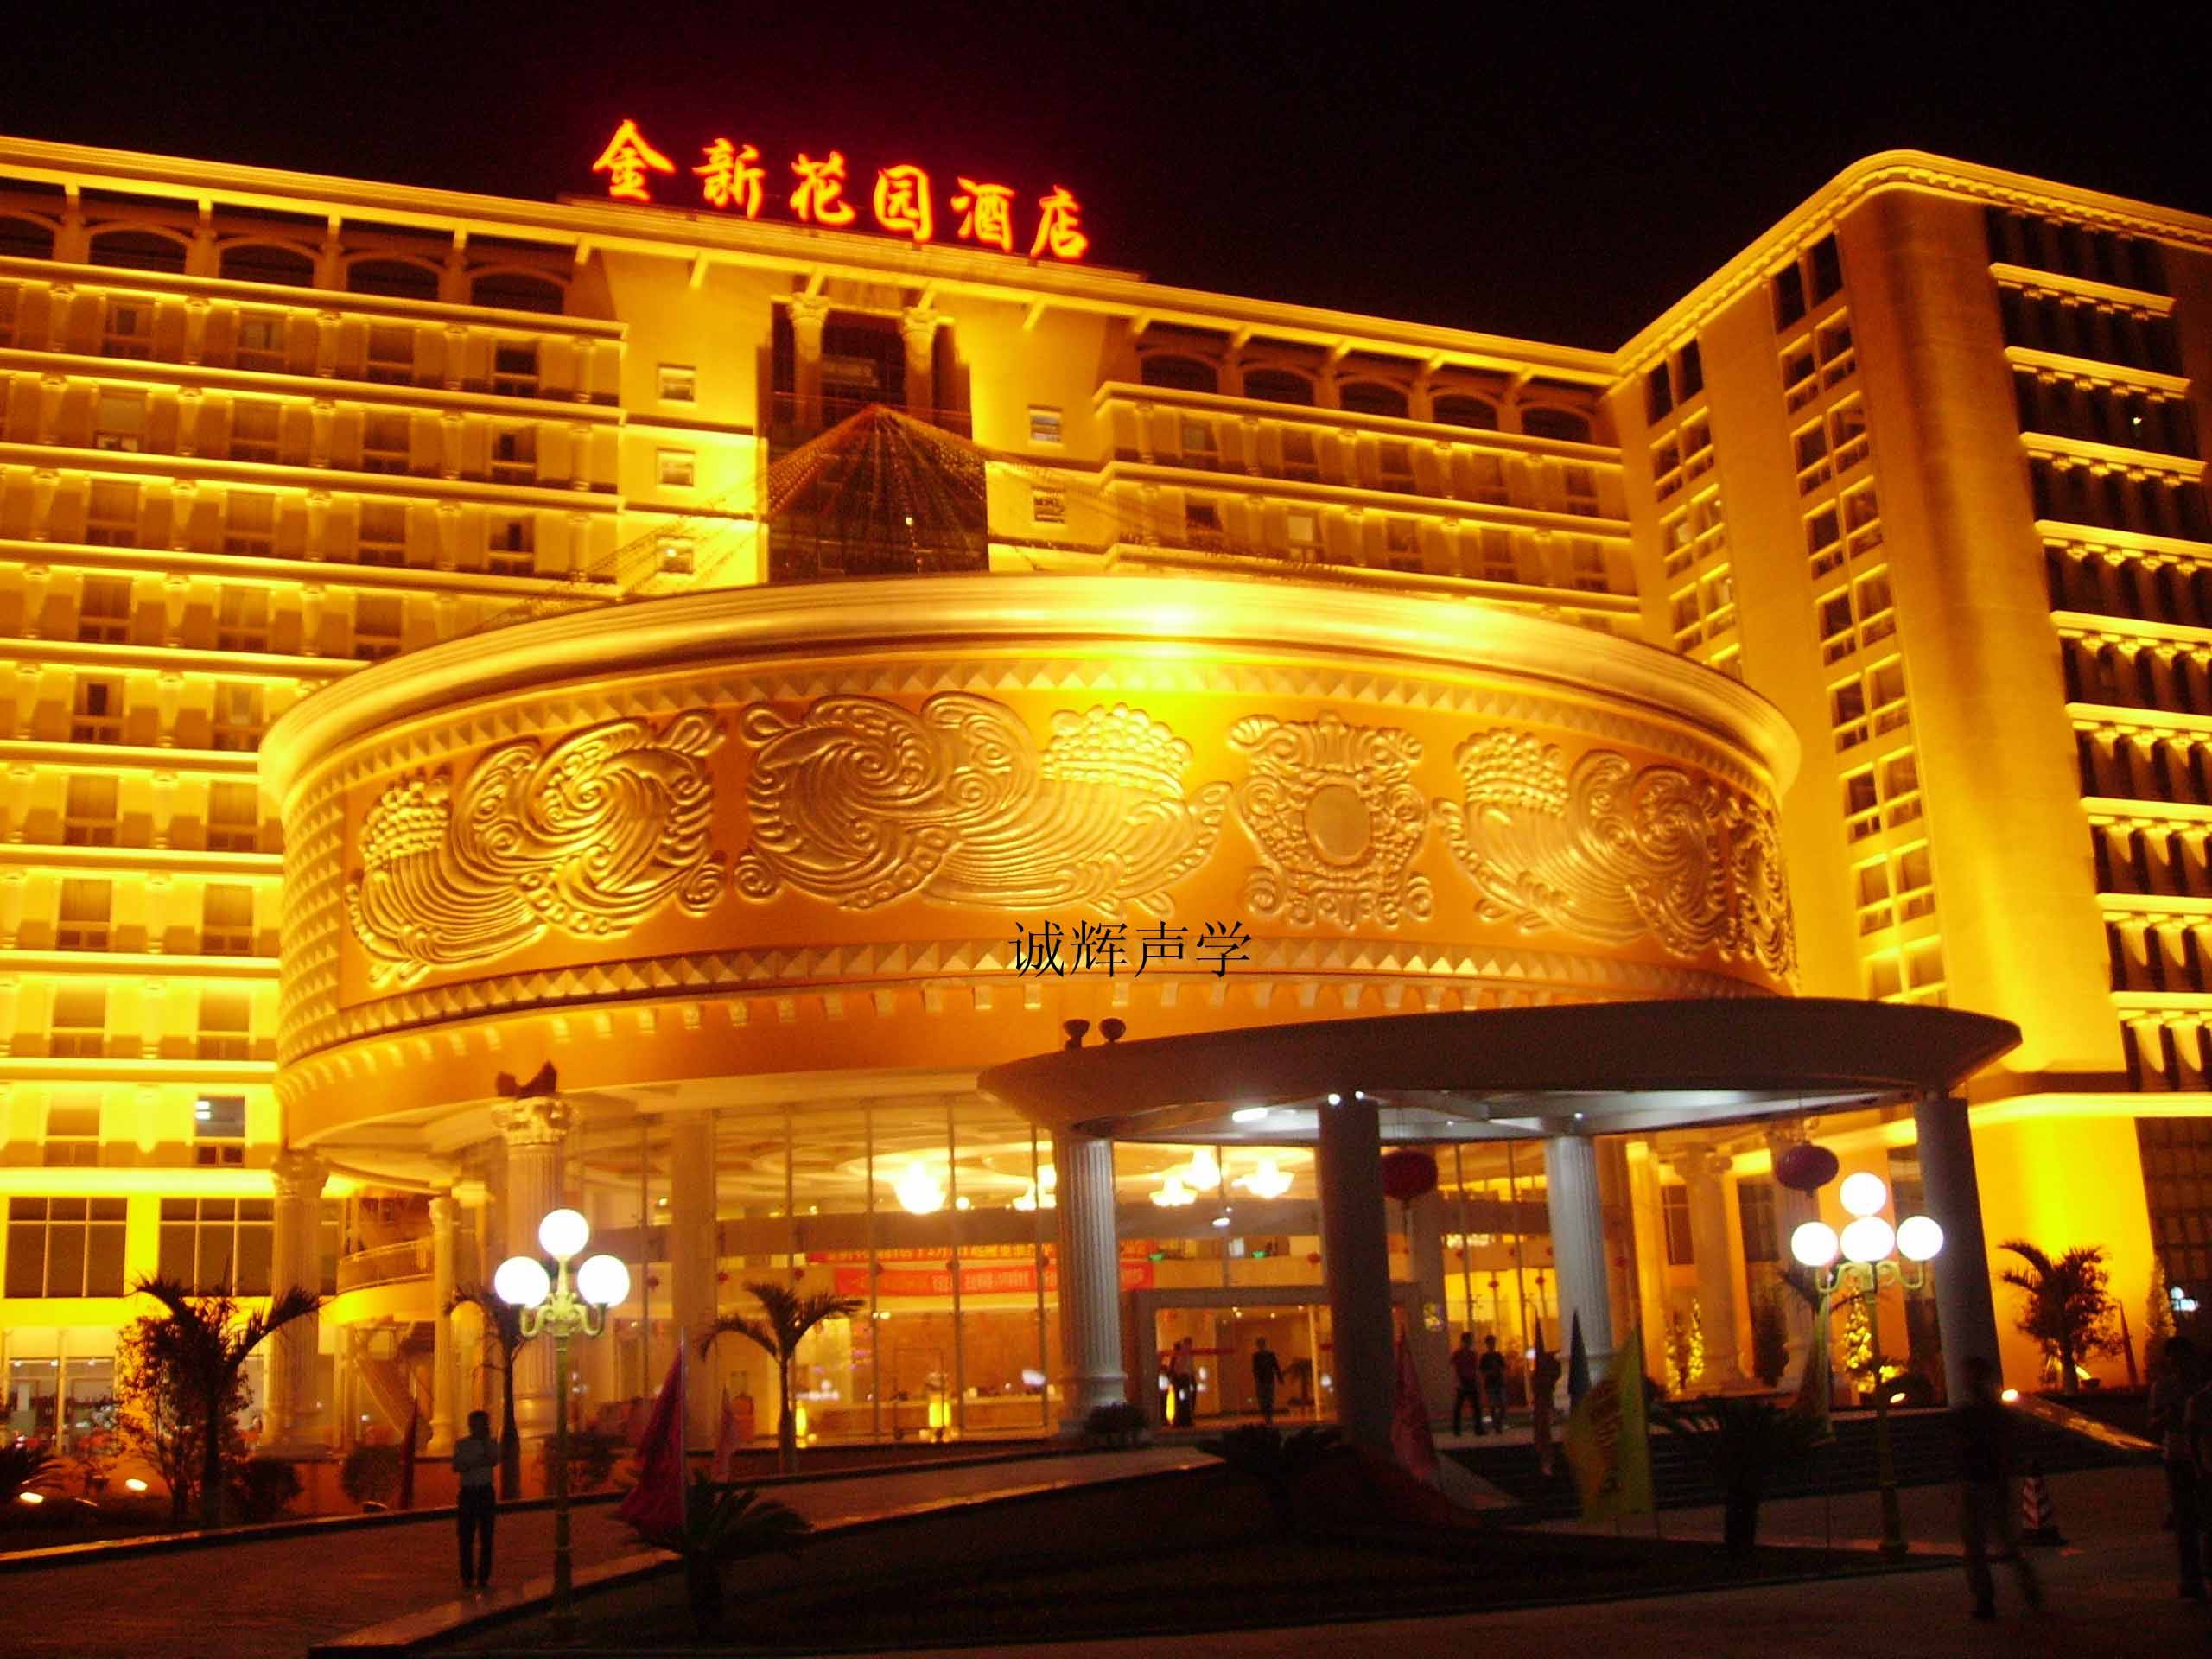 天府阳光酒店 已上线智客迅智能前台-智客迅酒店自助入住